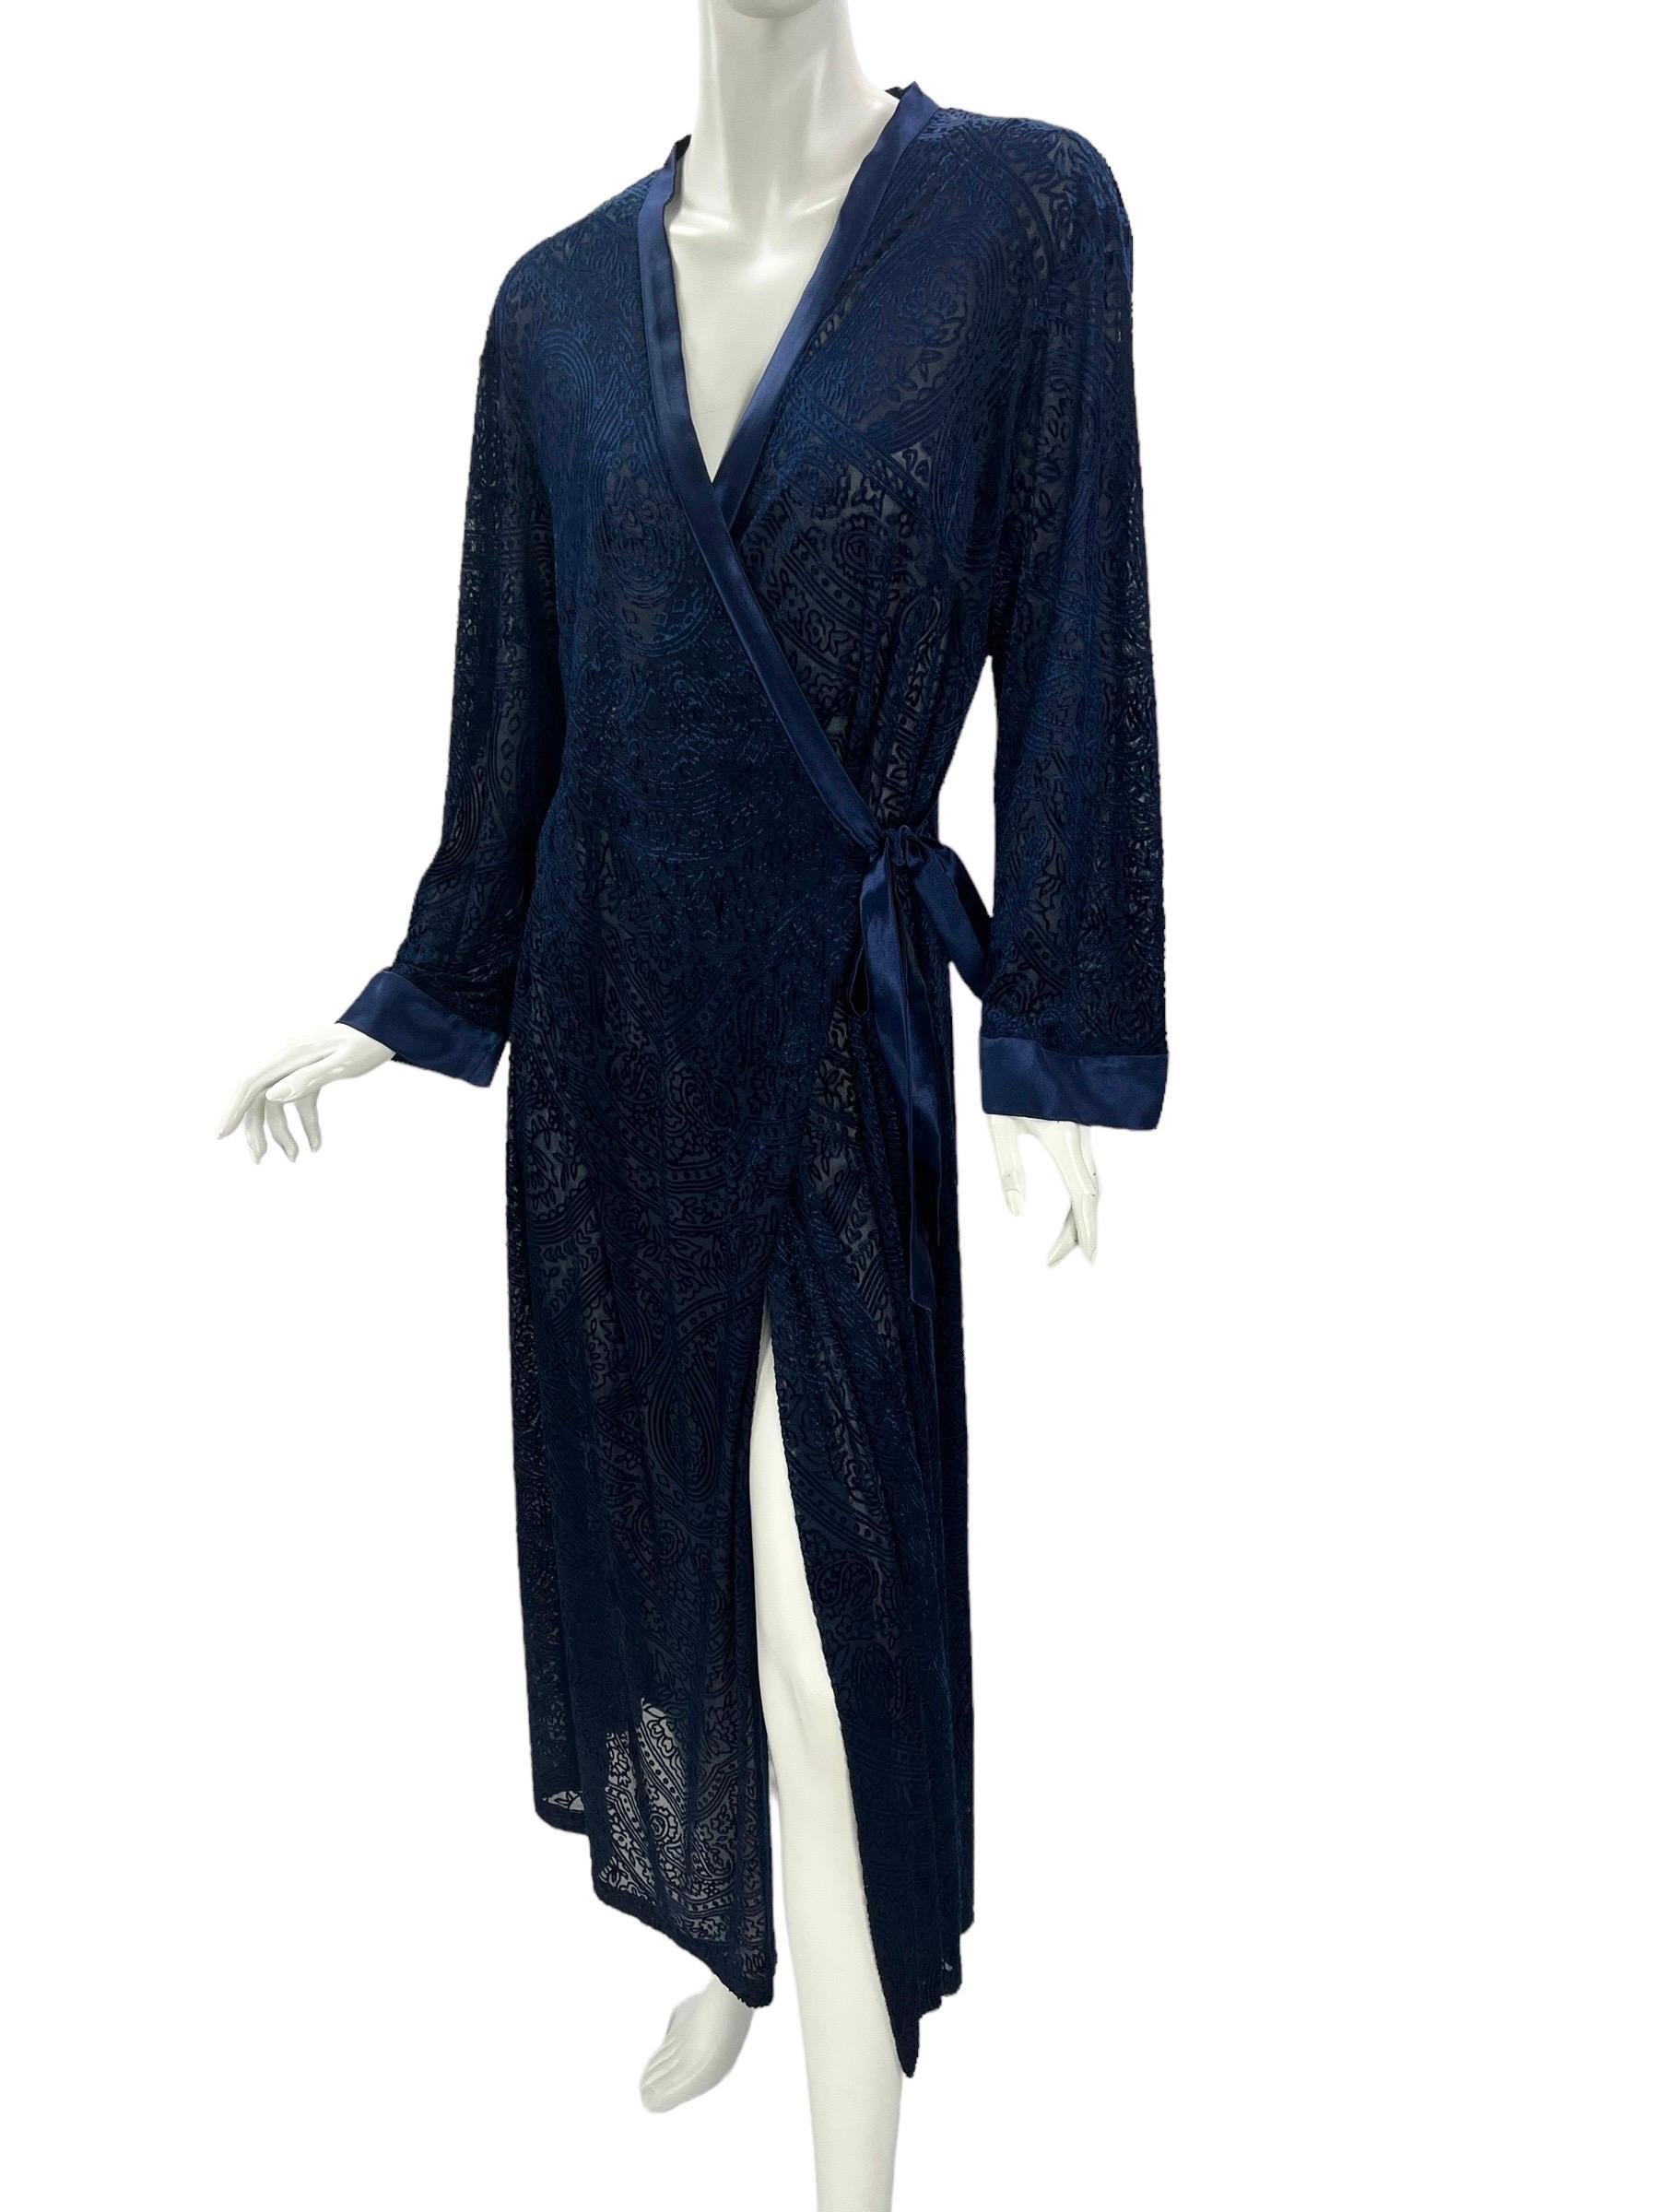 Robe d'intérieur / peignoir Vintage Oscar de la Renta 
Couleur : bleu nuit 
Tissu : velours dévoré 
Semisheer
Fini avec une ceinture et une bordure en soie
Taille M
Mesures : Longueur 52